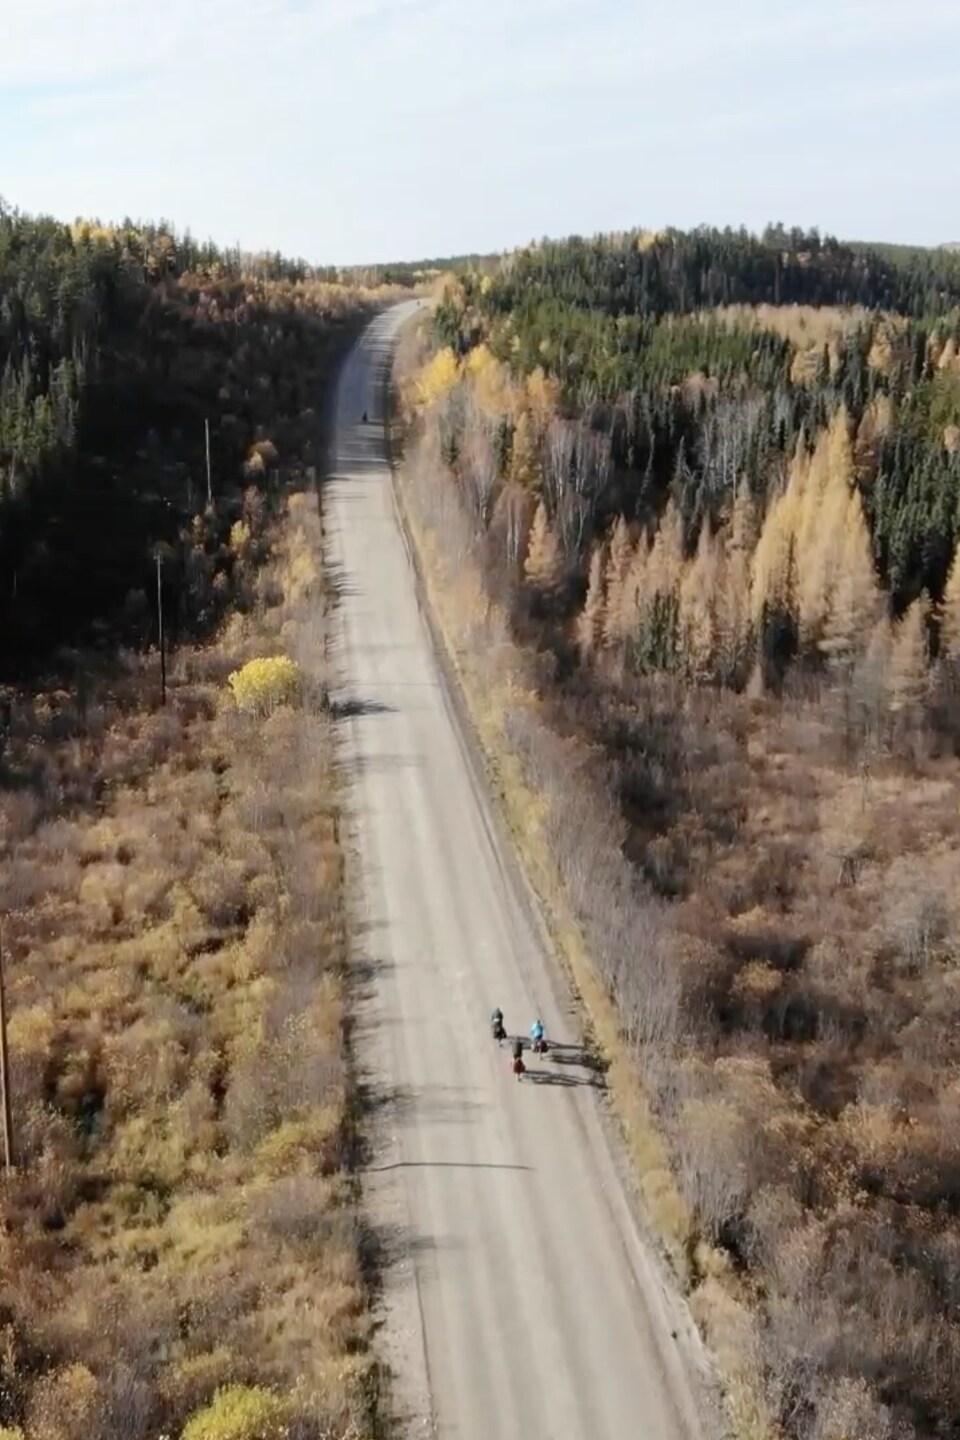 Image de drone de trois personnes en vélo sur une route de gravelle, entourés de forêt